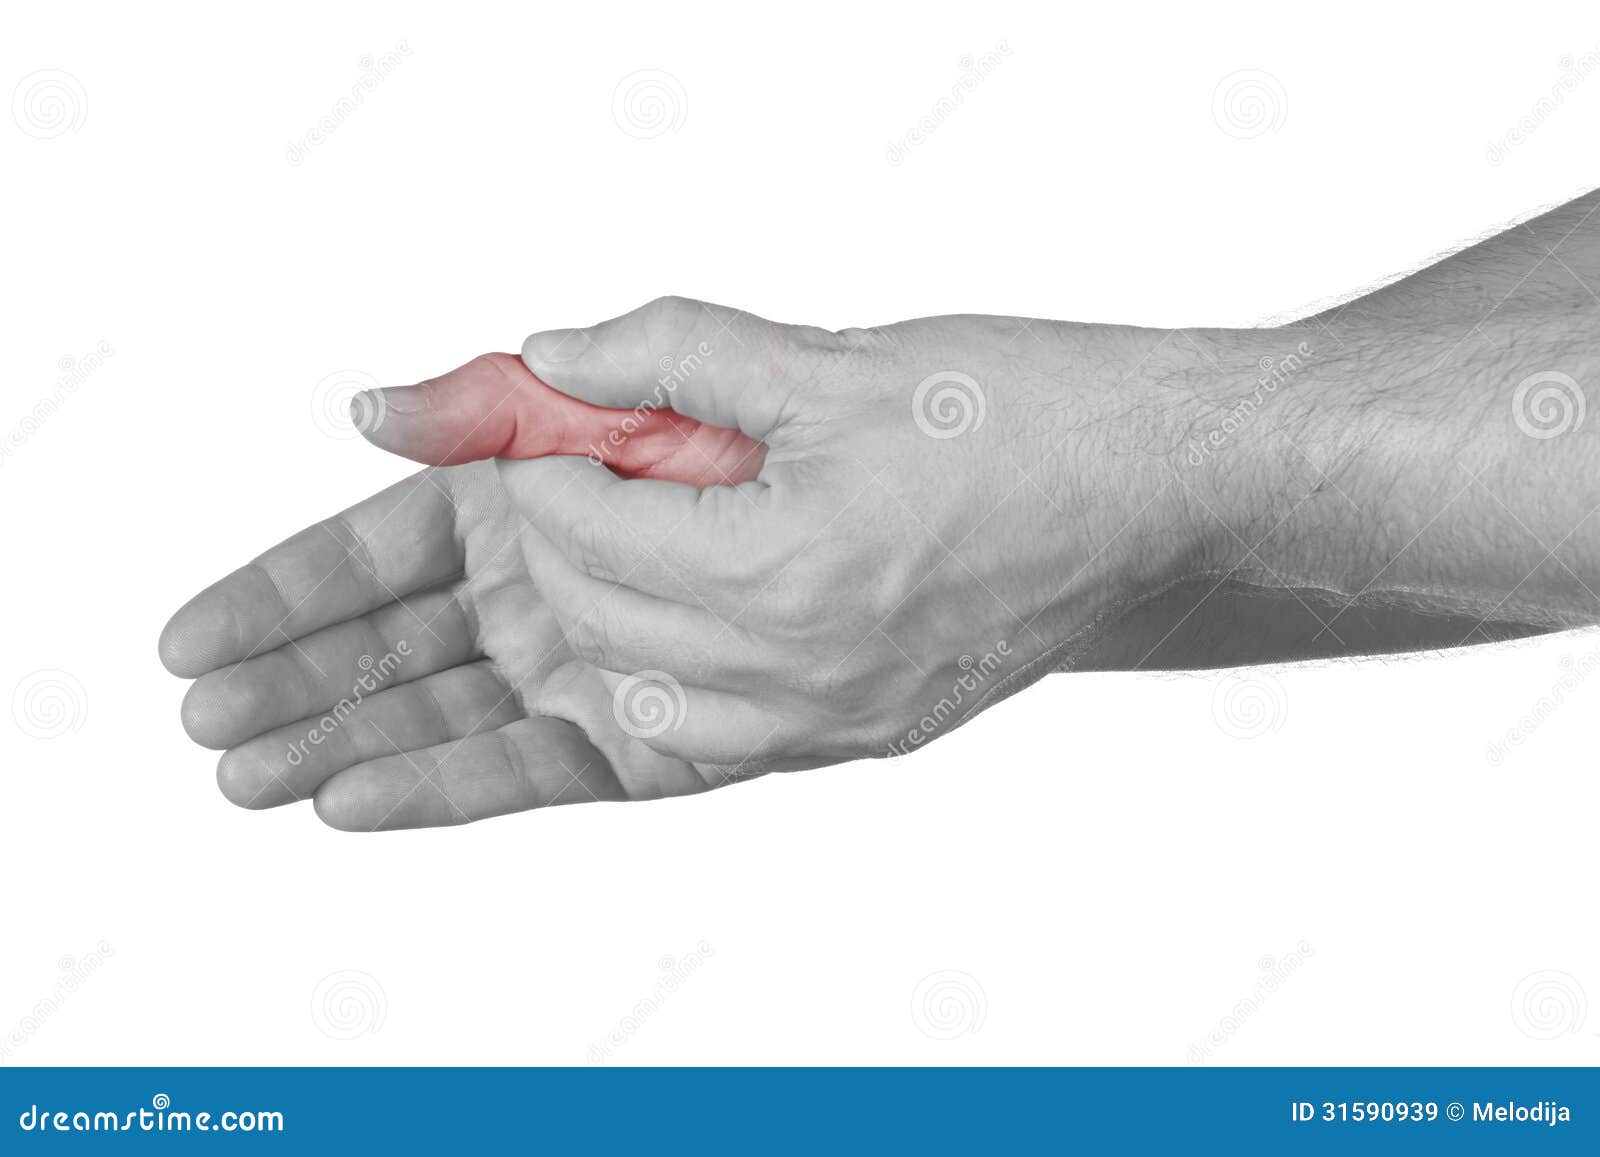 Болит сустав у основания большого пальца руки. Сустав большого пальца руки. Боль в суставе большого пальца руки. Болит сустав большого пальца на руке. Болит сустав Болшево пальца на руке.